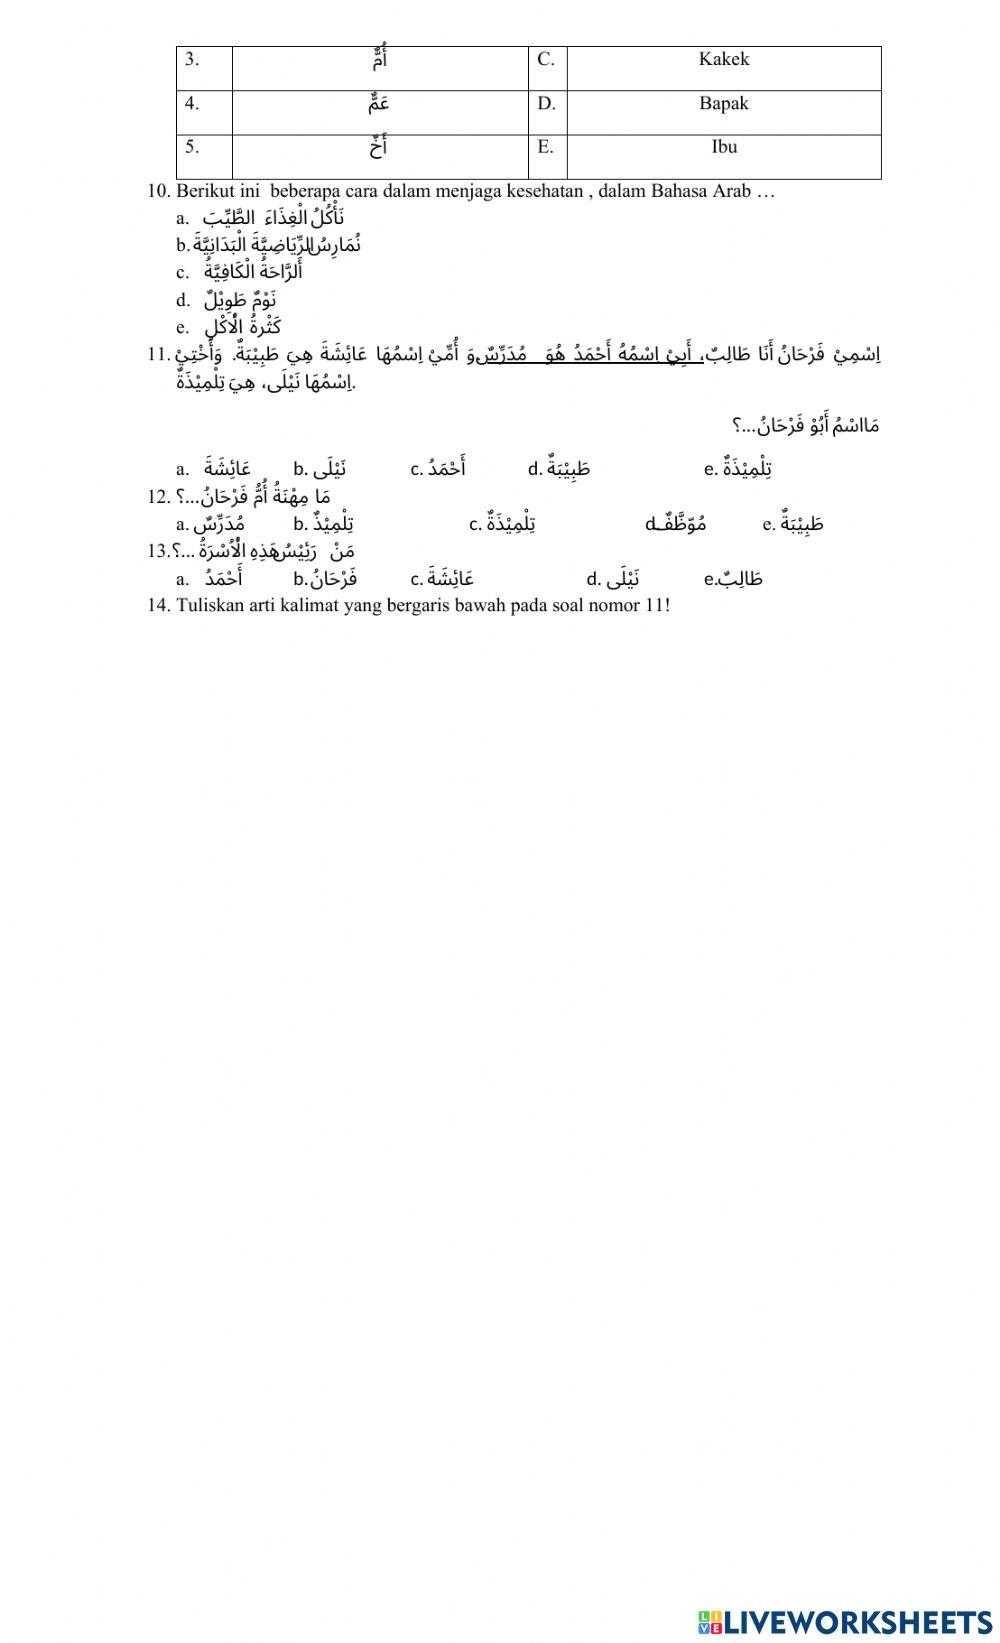 Pas bhs. arab ganjil kelas x